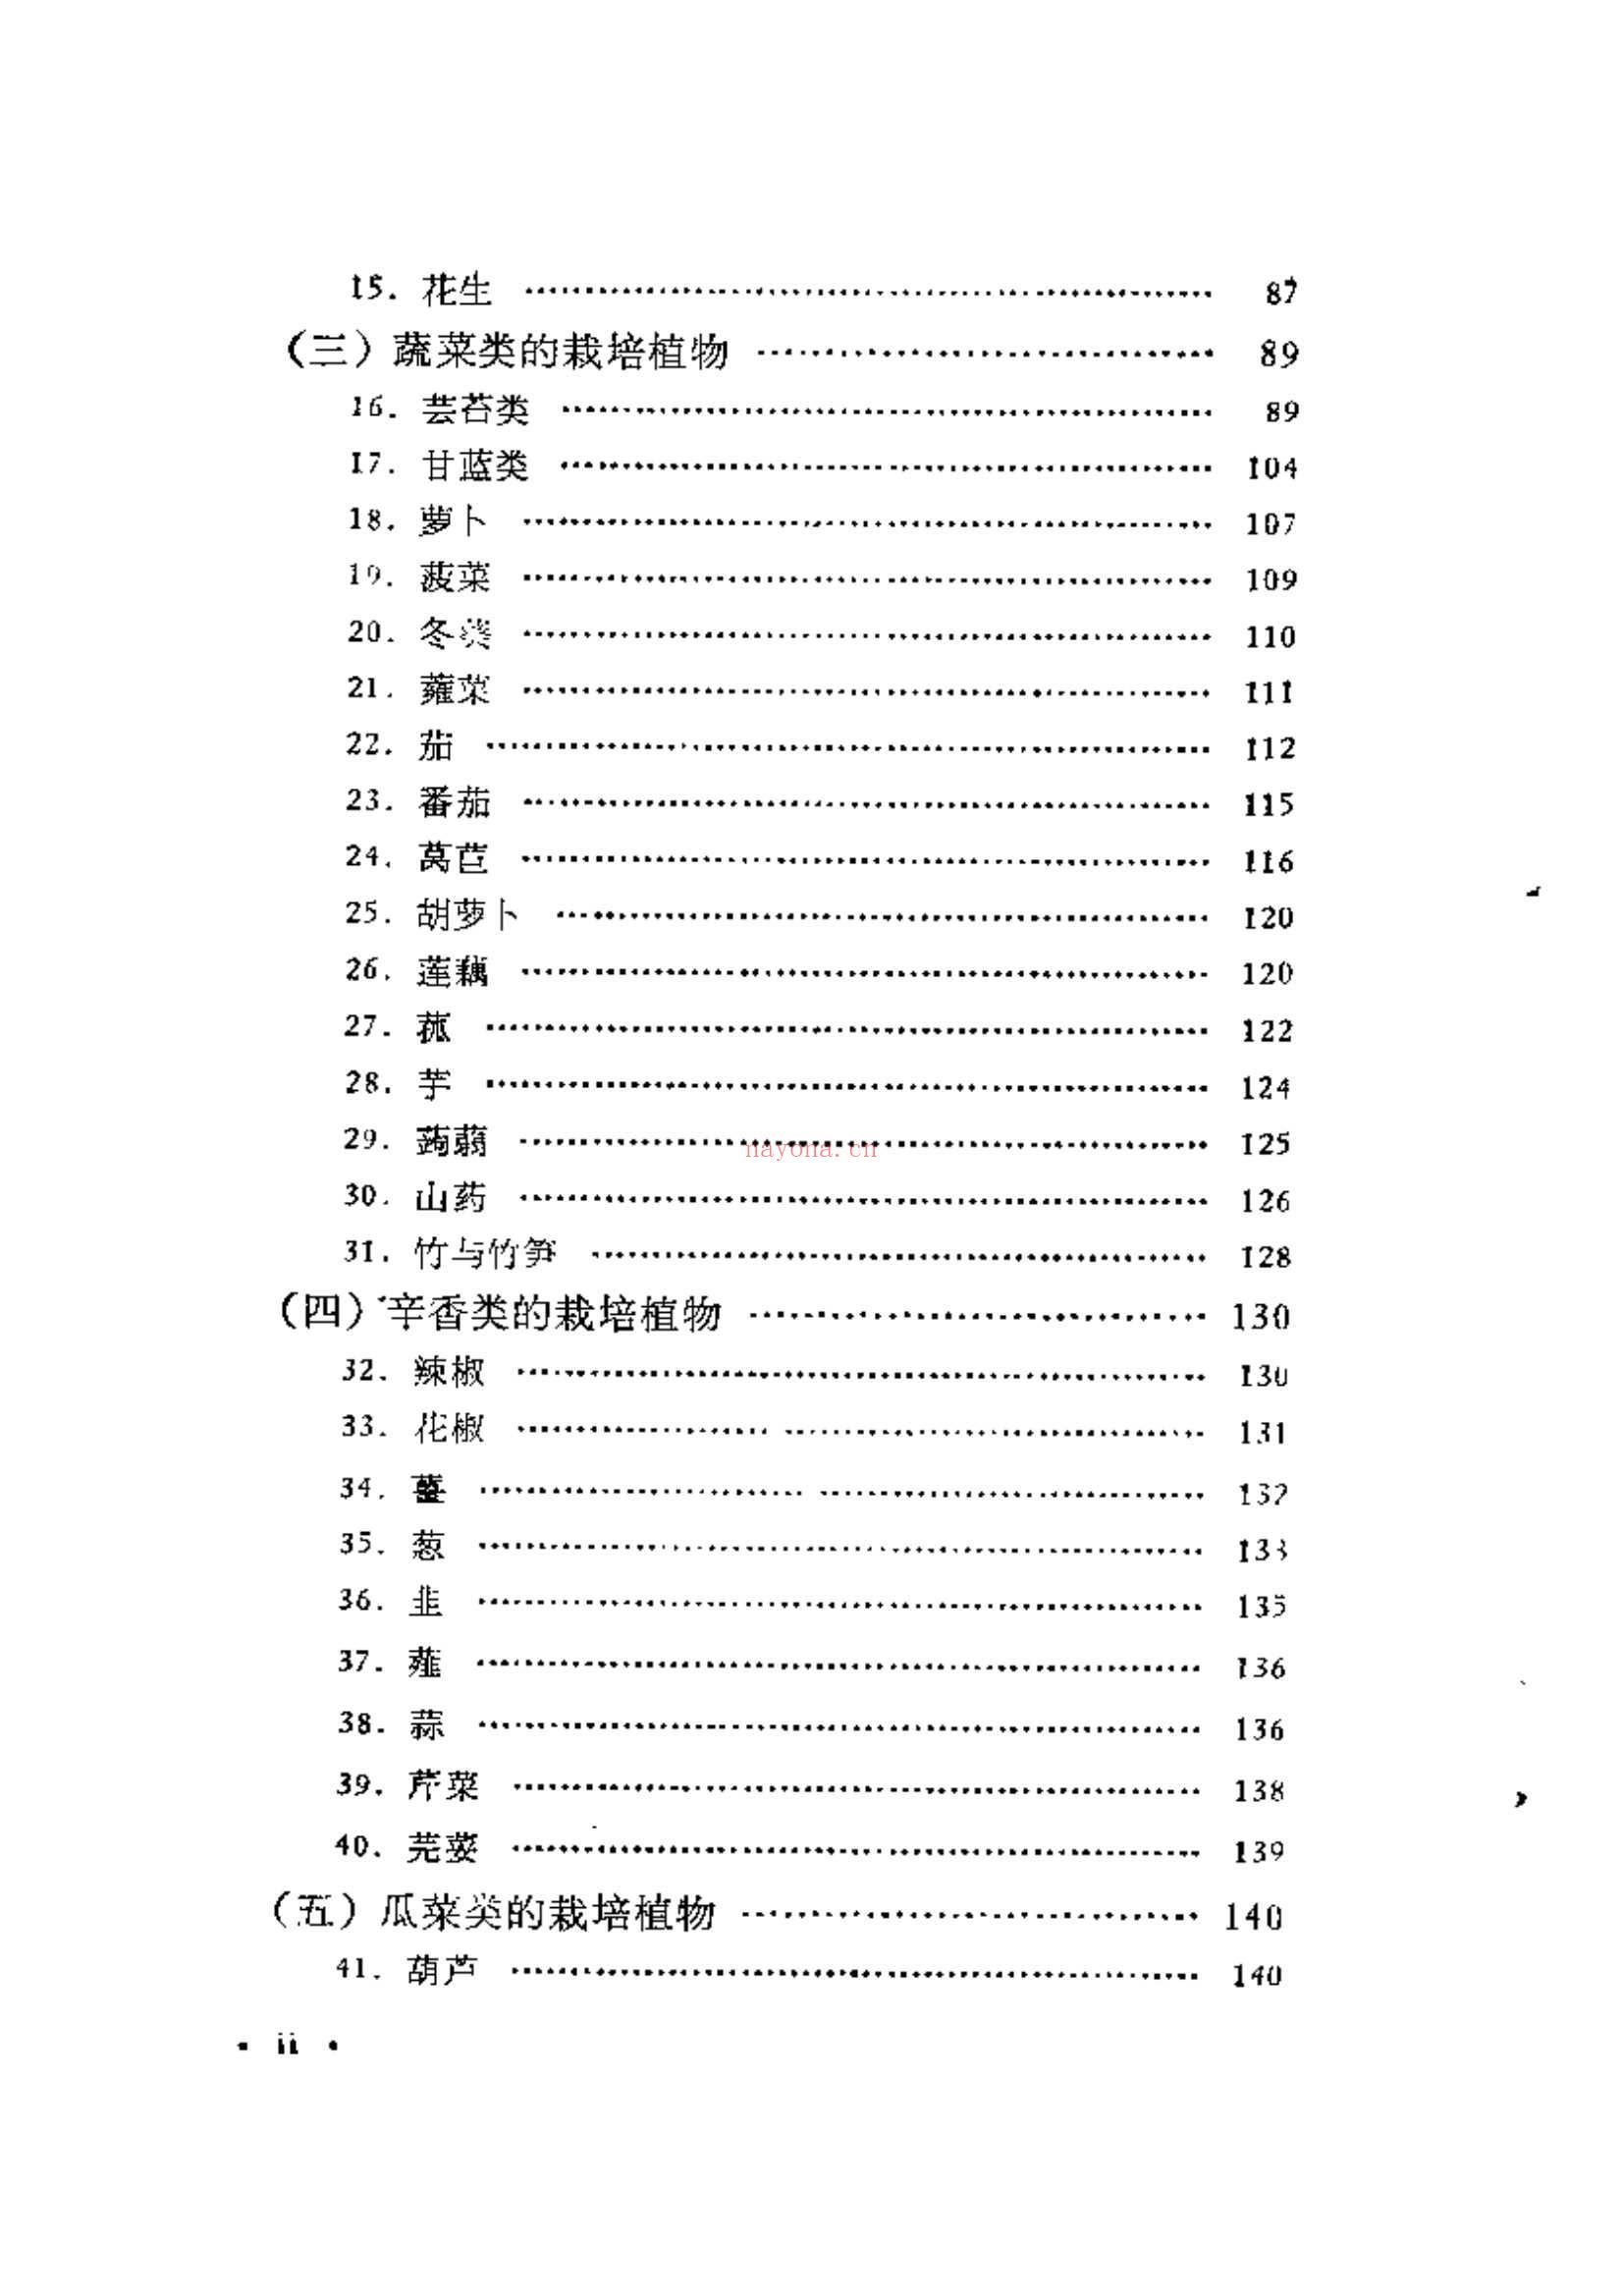 中国栽培植物发展史 电子书 (中国栽培植物发展史pdf)